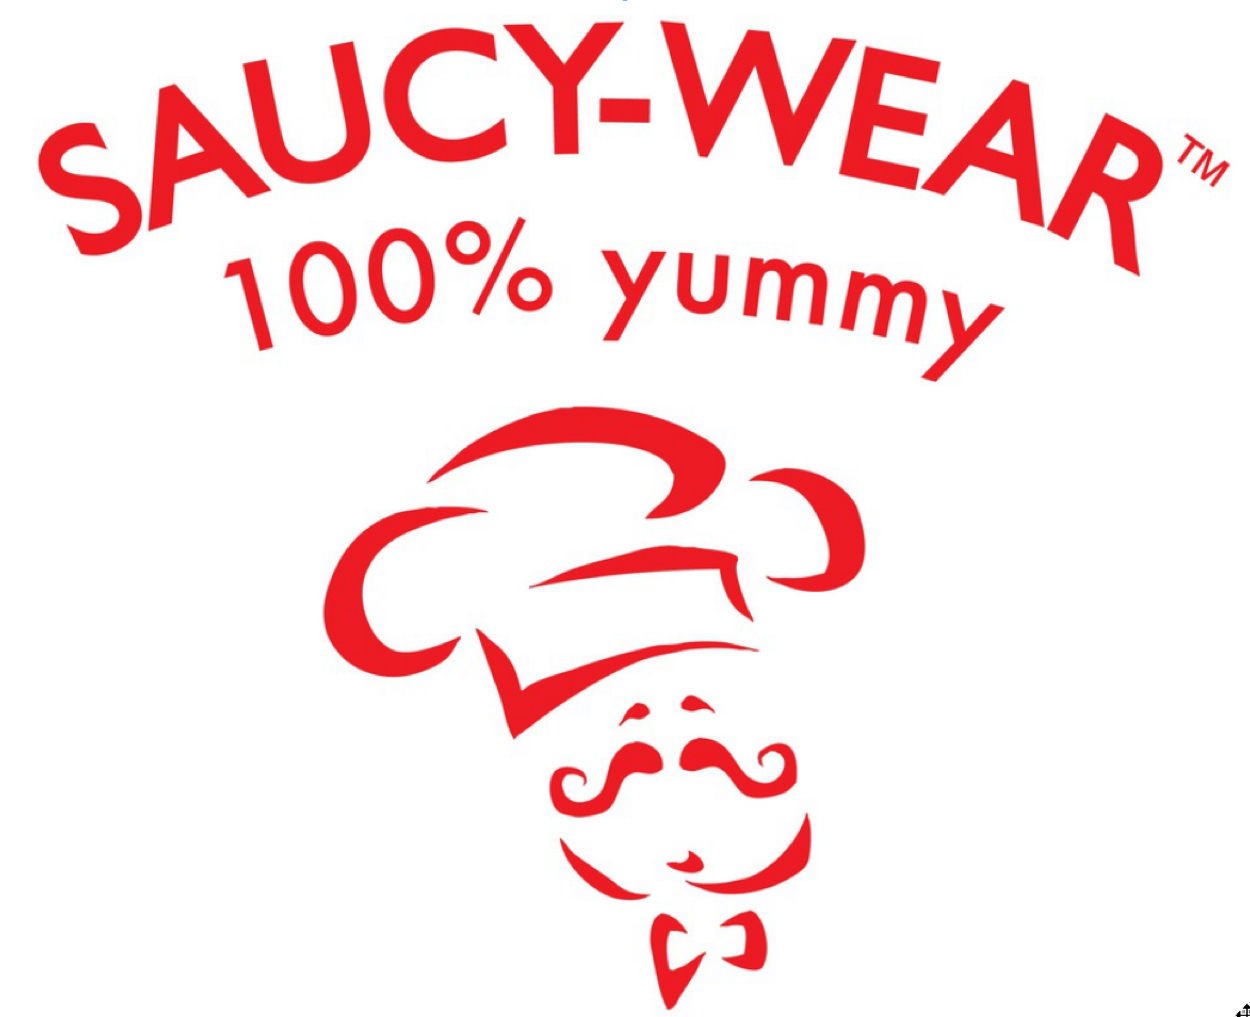 Saucy-Wear-Logo.jpg